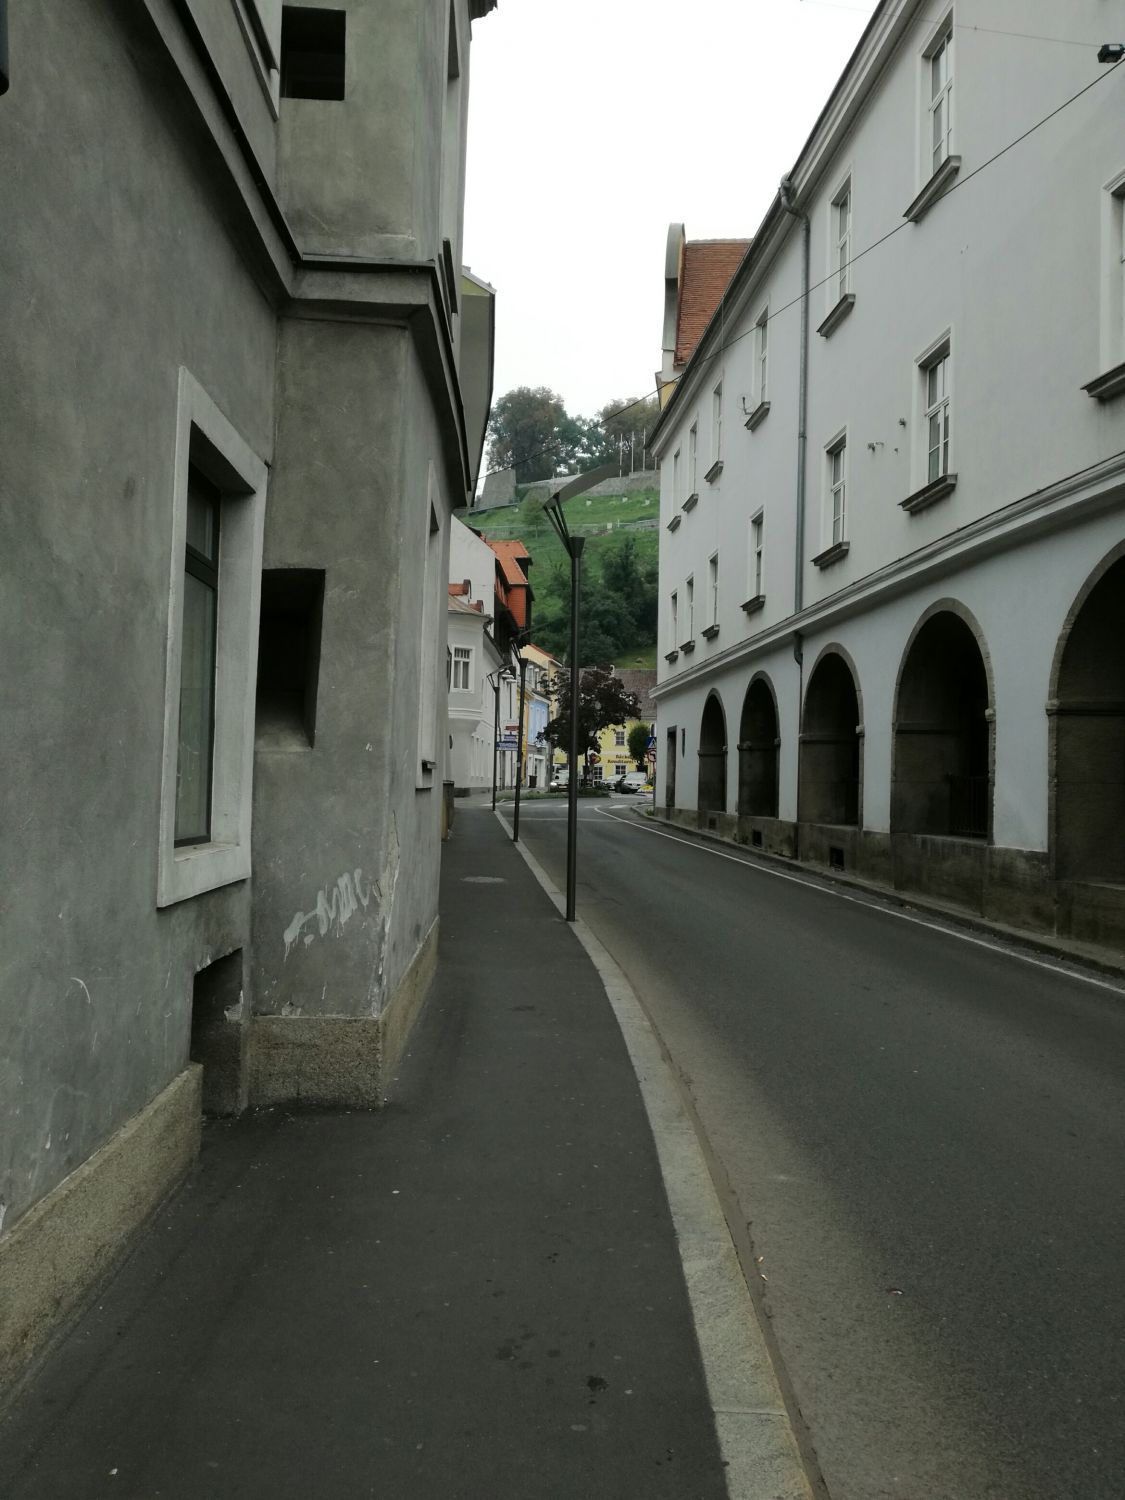 Spion in Bruck an der Mur